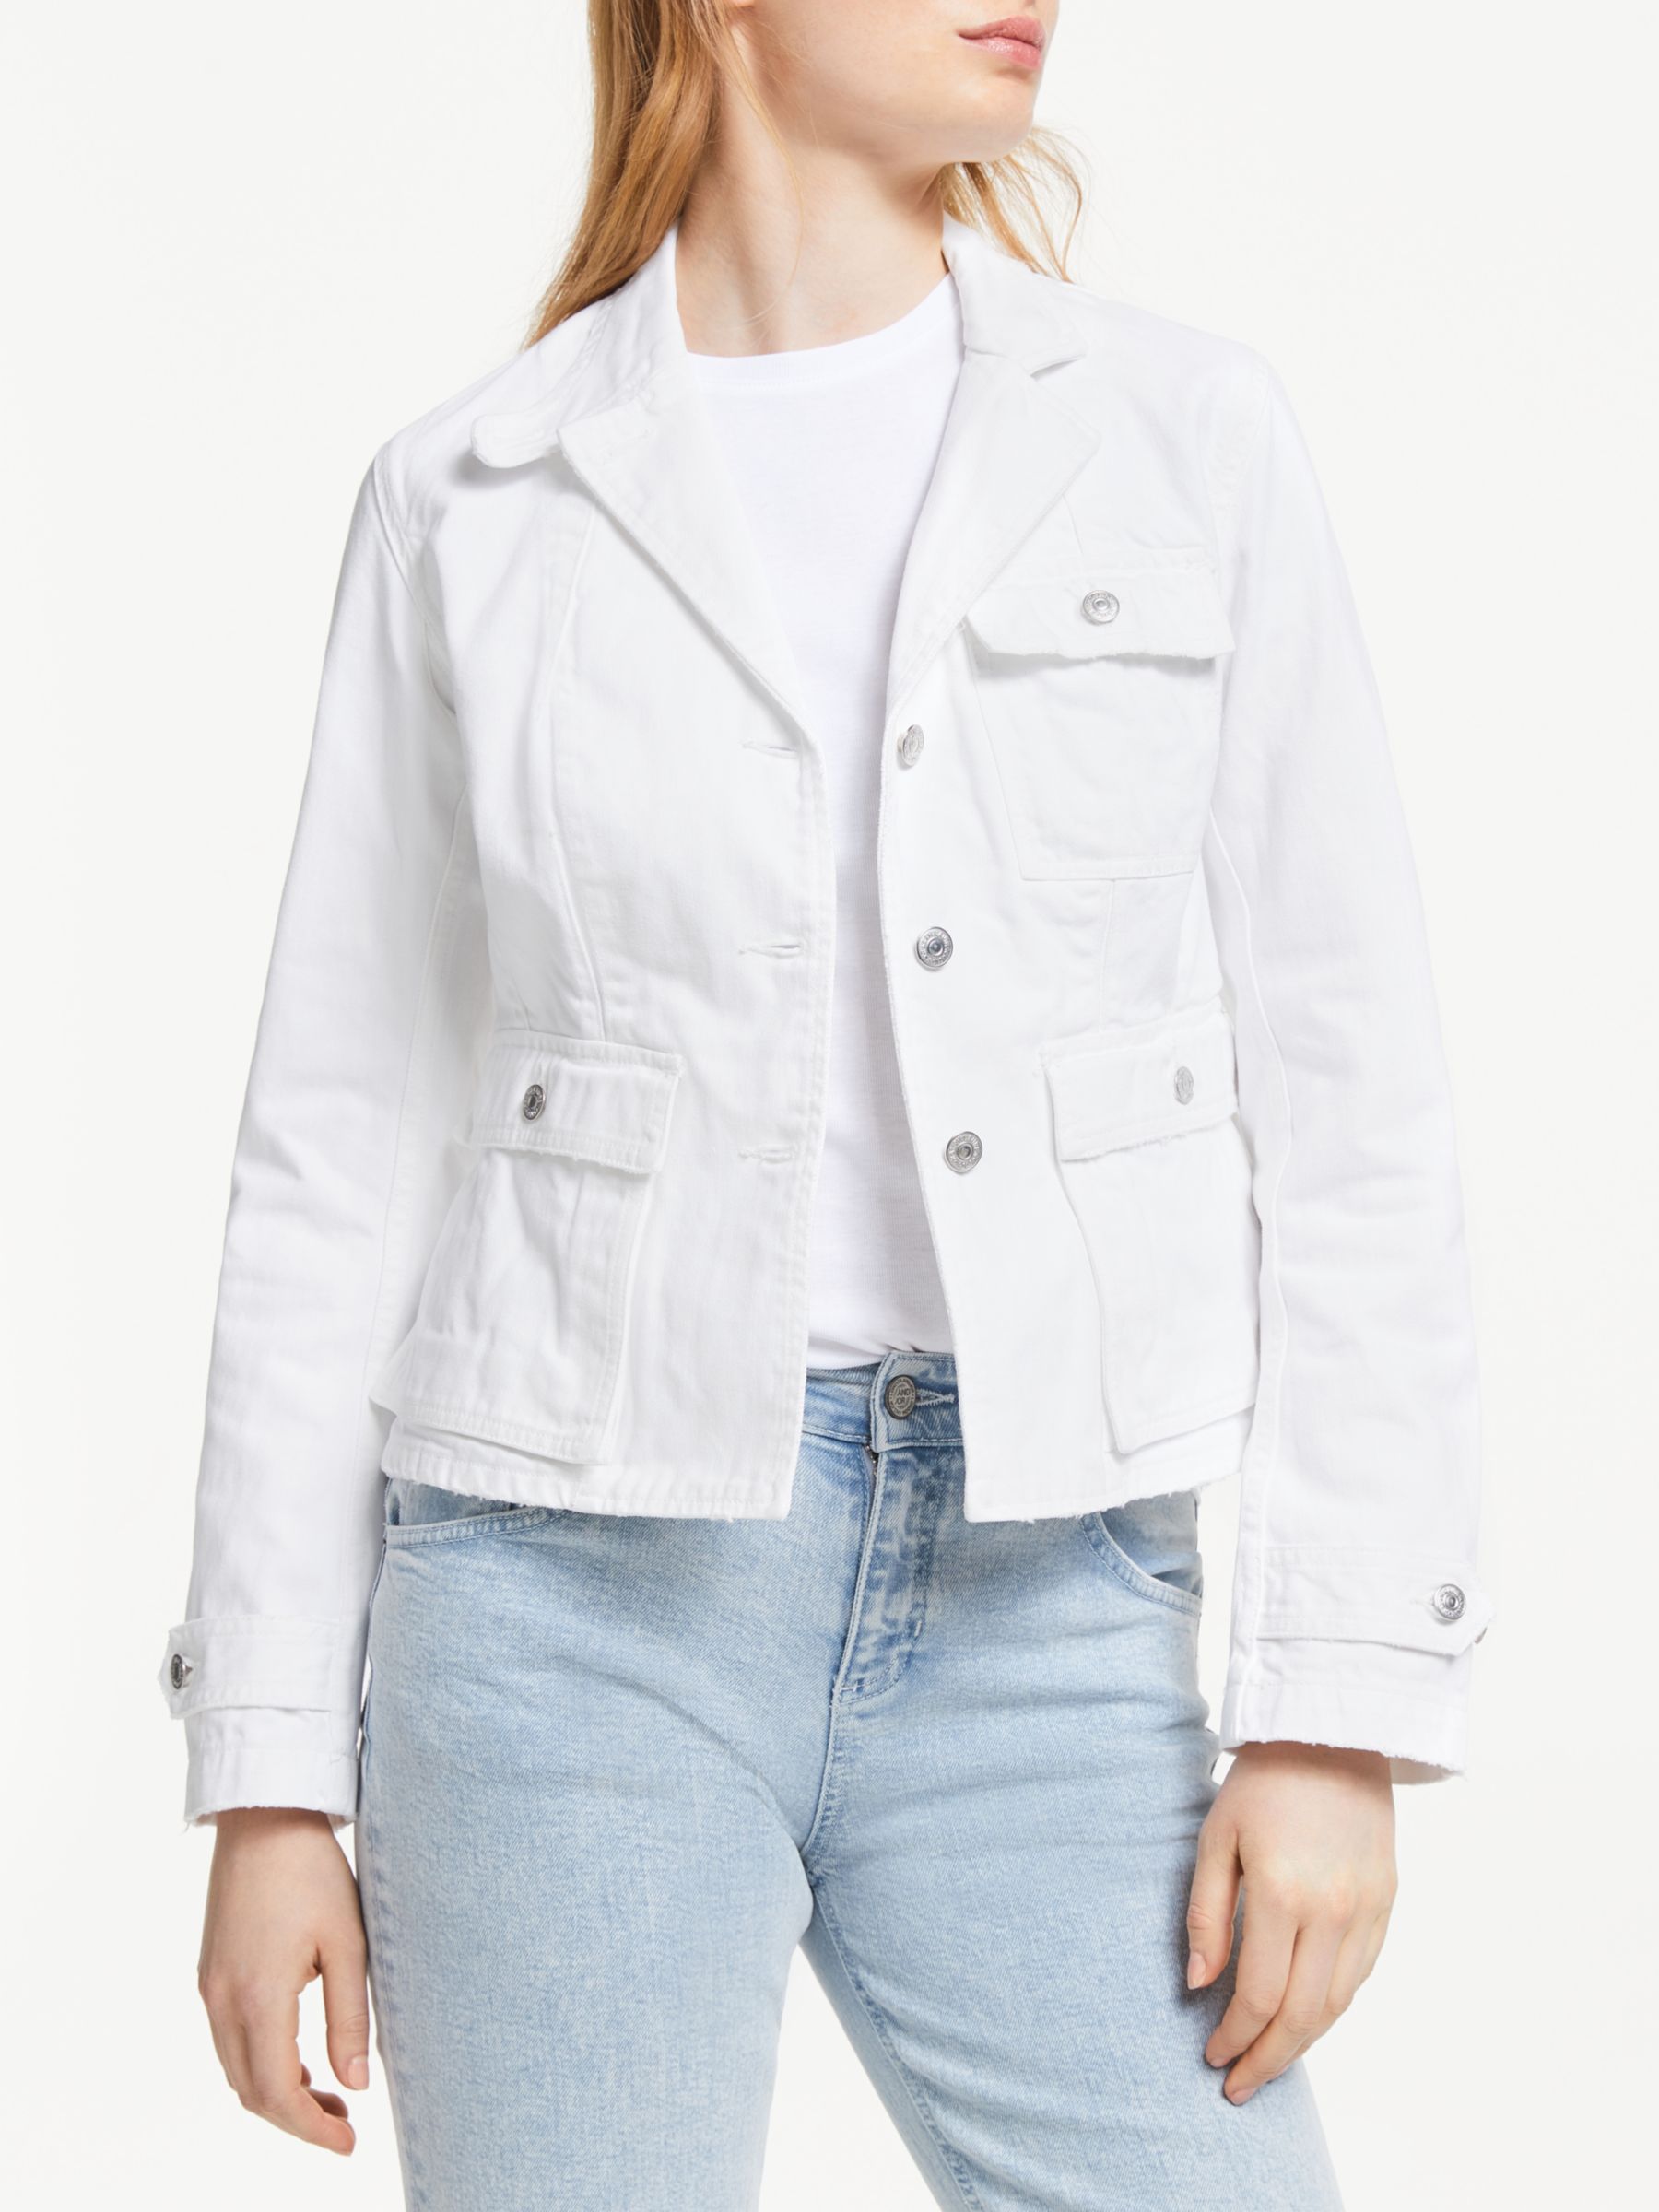 white polo jean jacket